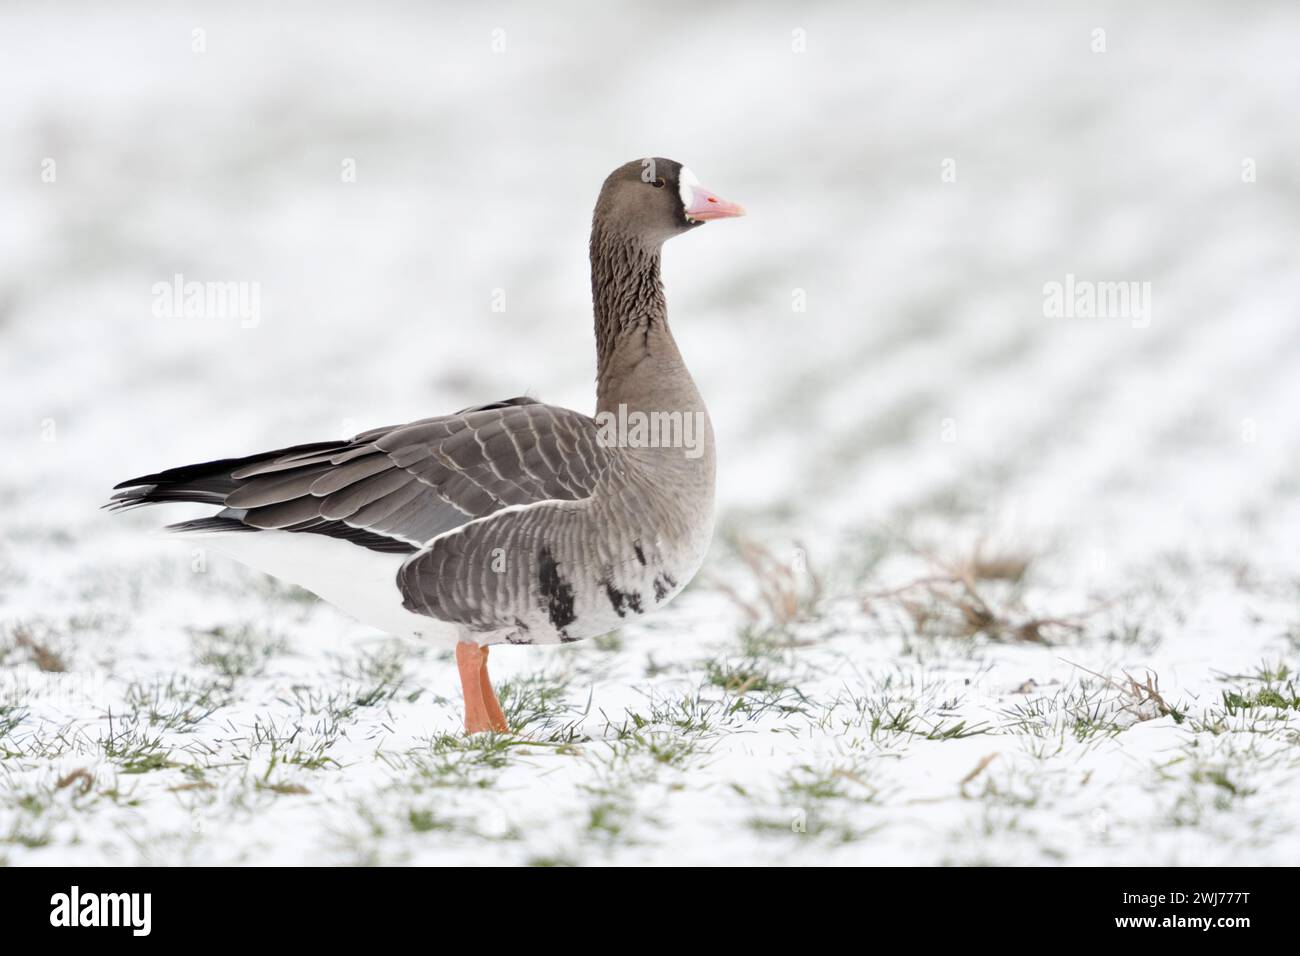 Grand White-fronted Goose ( Anser albifrons ), hôte de l'hiver arctique, sur des terres agricoles couvertes de neige, observant attentivement, la faune, l'Europe. Banque D'Images